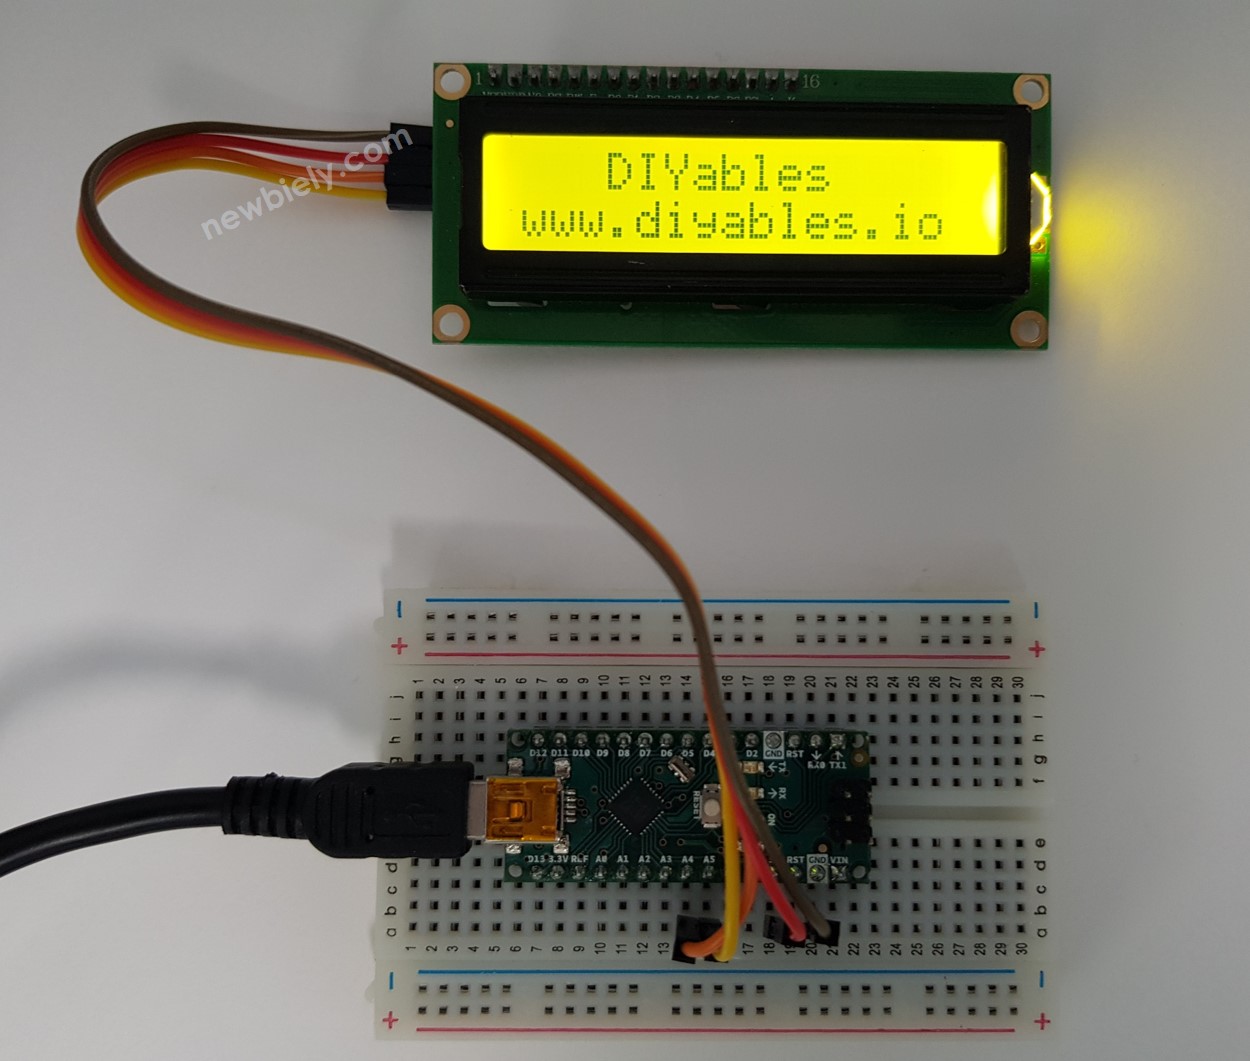 Afficher du texte sur un écran LCD avec Arduino Nano